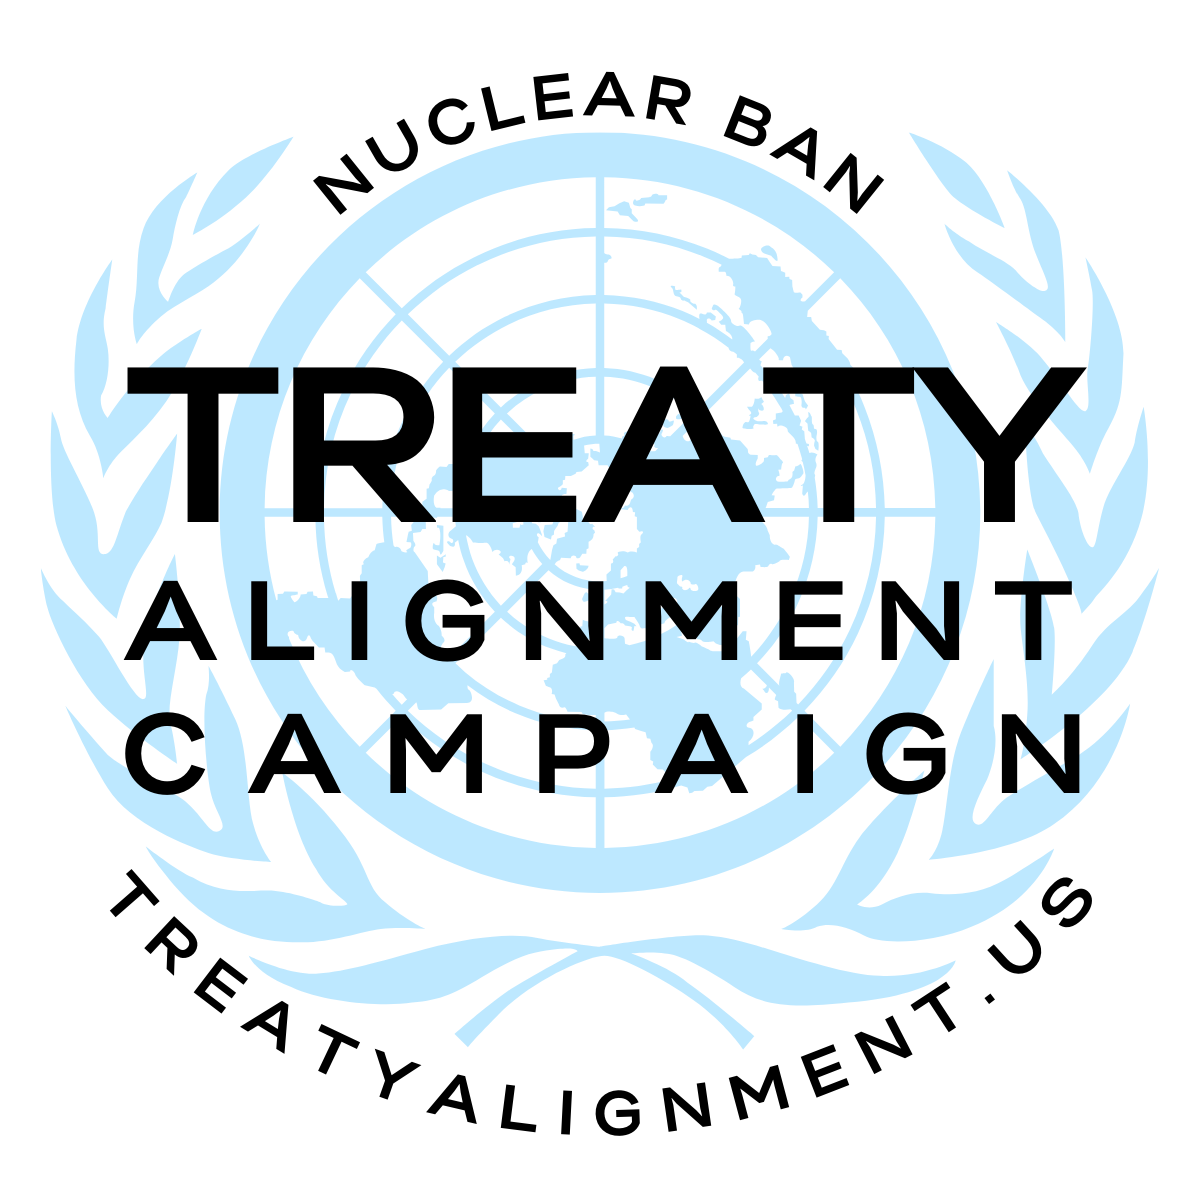 Treaty Alignment Campaign